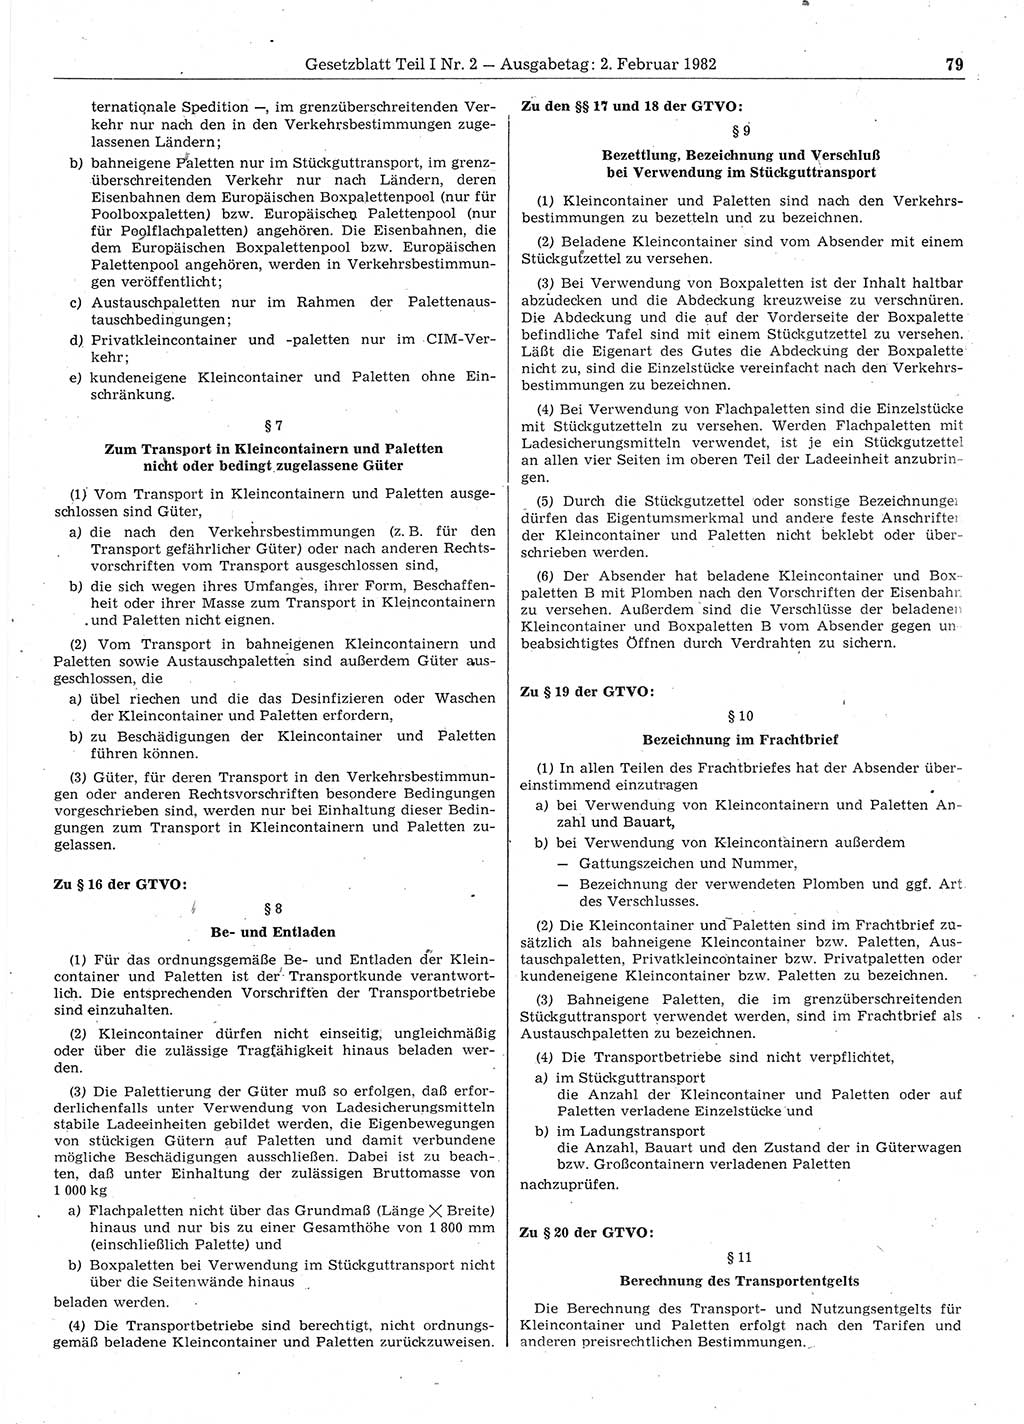 Gesetzblatt (GBl.) der Deutschen Demokratischen Republik (DDR) Teil Ⅰ 1982, Seite 79 (GBl. DDR Ⅰ 1982, S. 79)